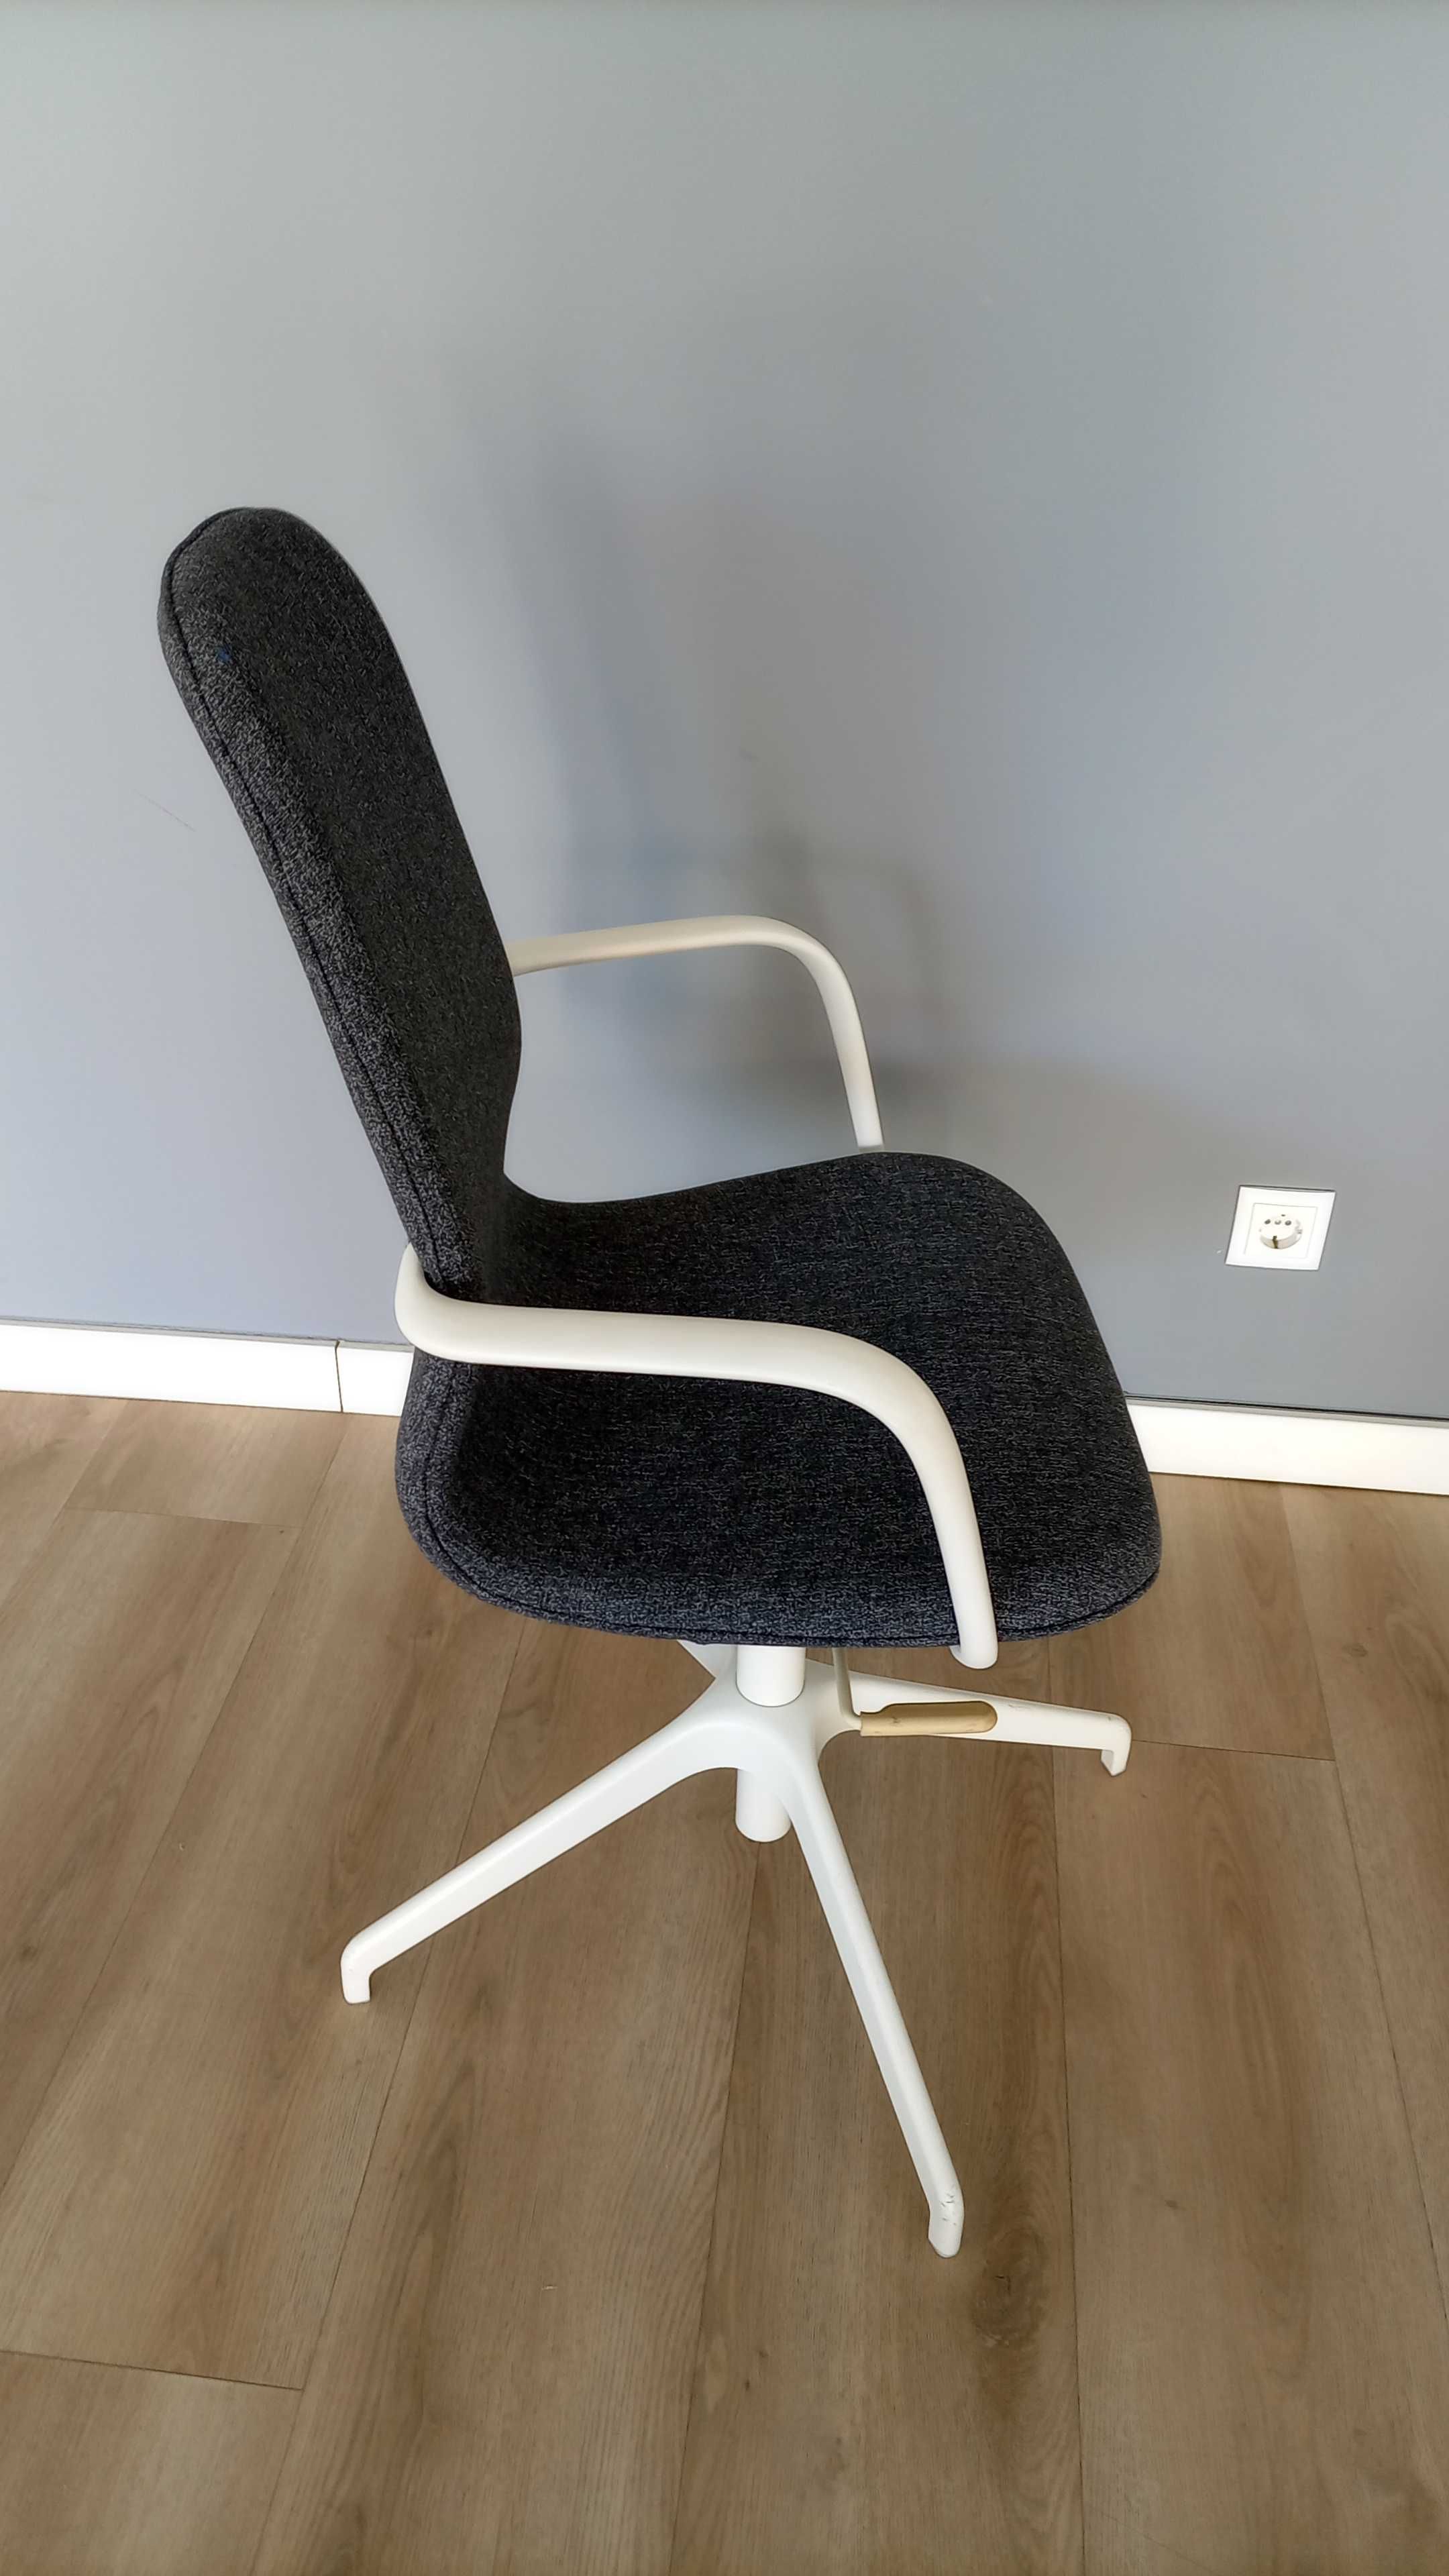 Cadeira Giratória Modelo Langfjall do IKEA - Ótimo estado